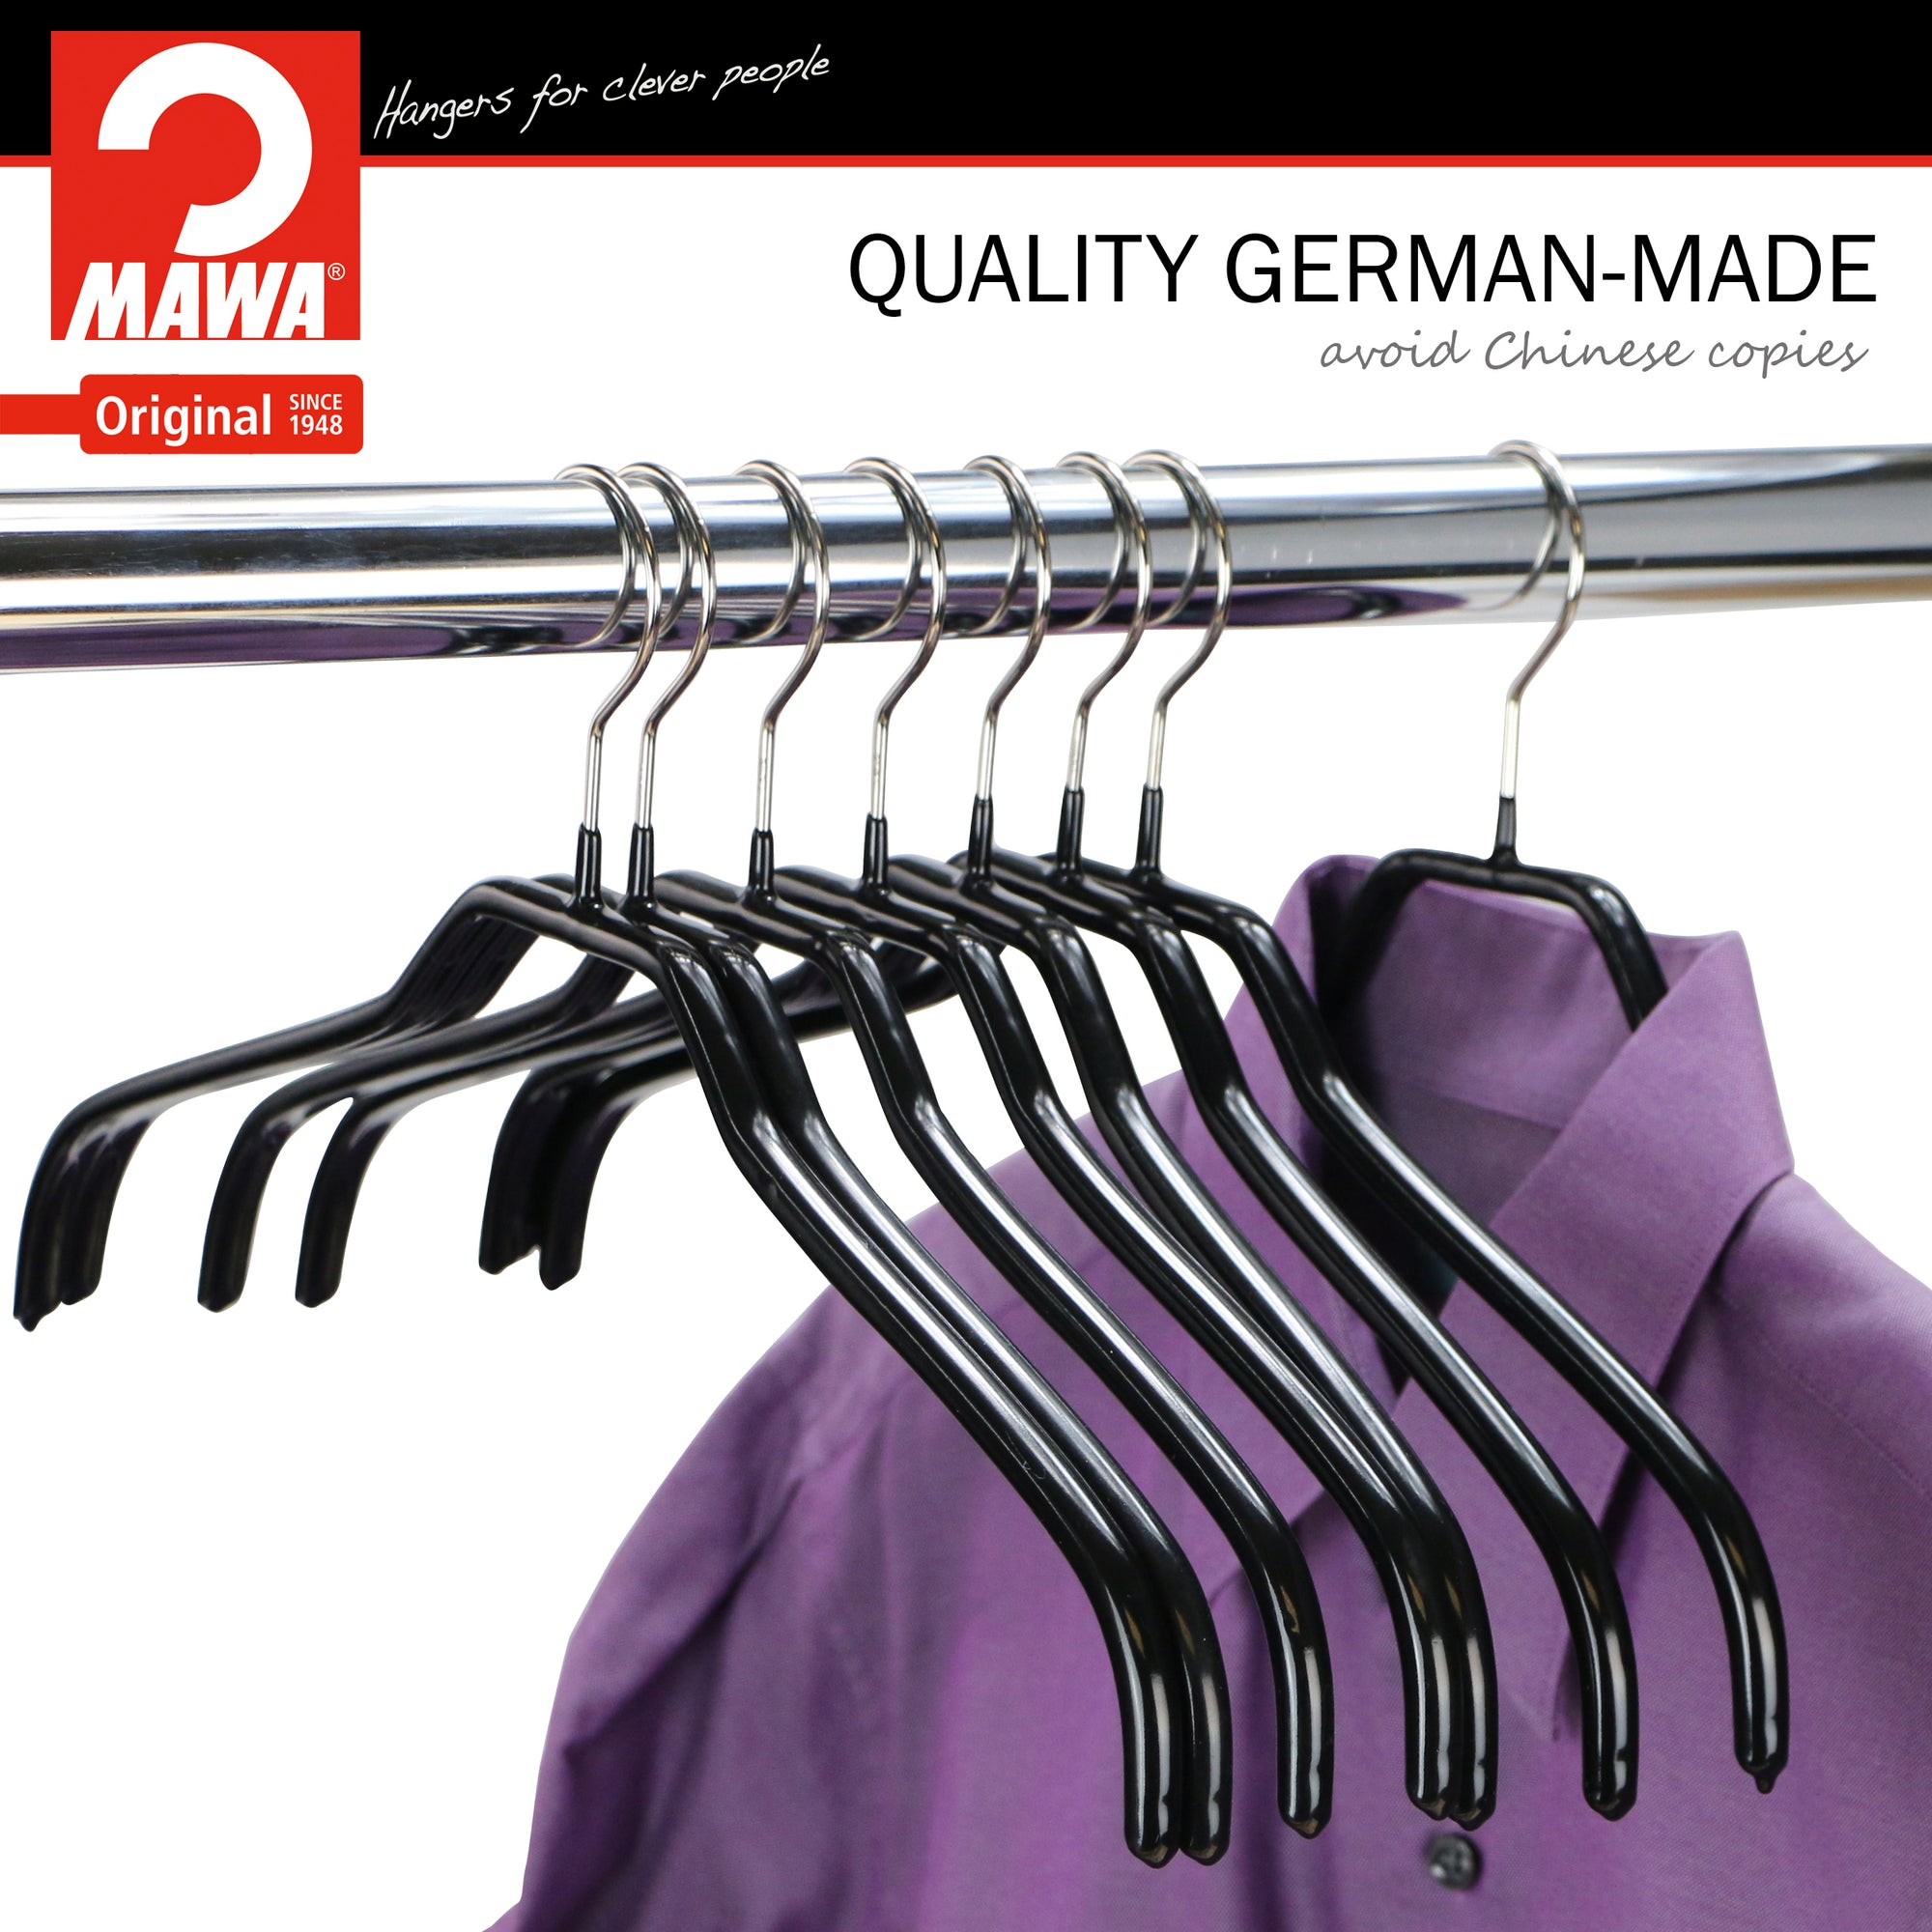 Quality Hangers 16 Heavy Duty Metal Suit Hanger Coat Hangers with